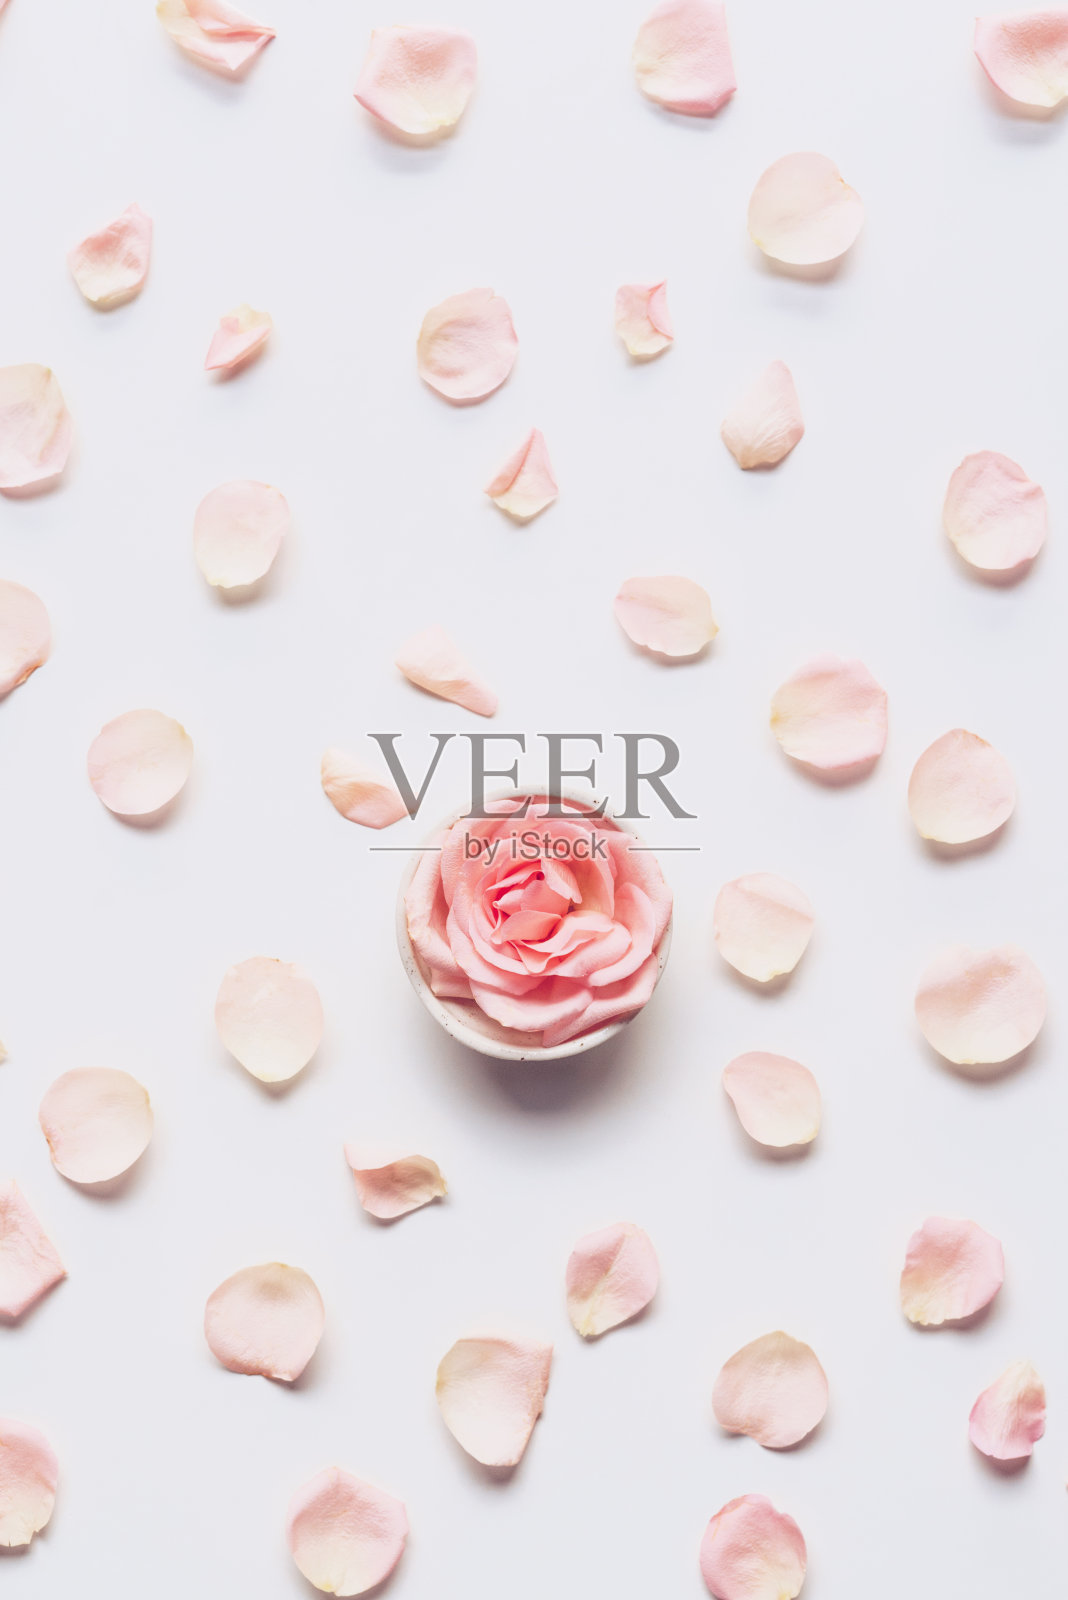 粉红色的玫瑰头和花瓣散布在白色的背景上照片摄影图片